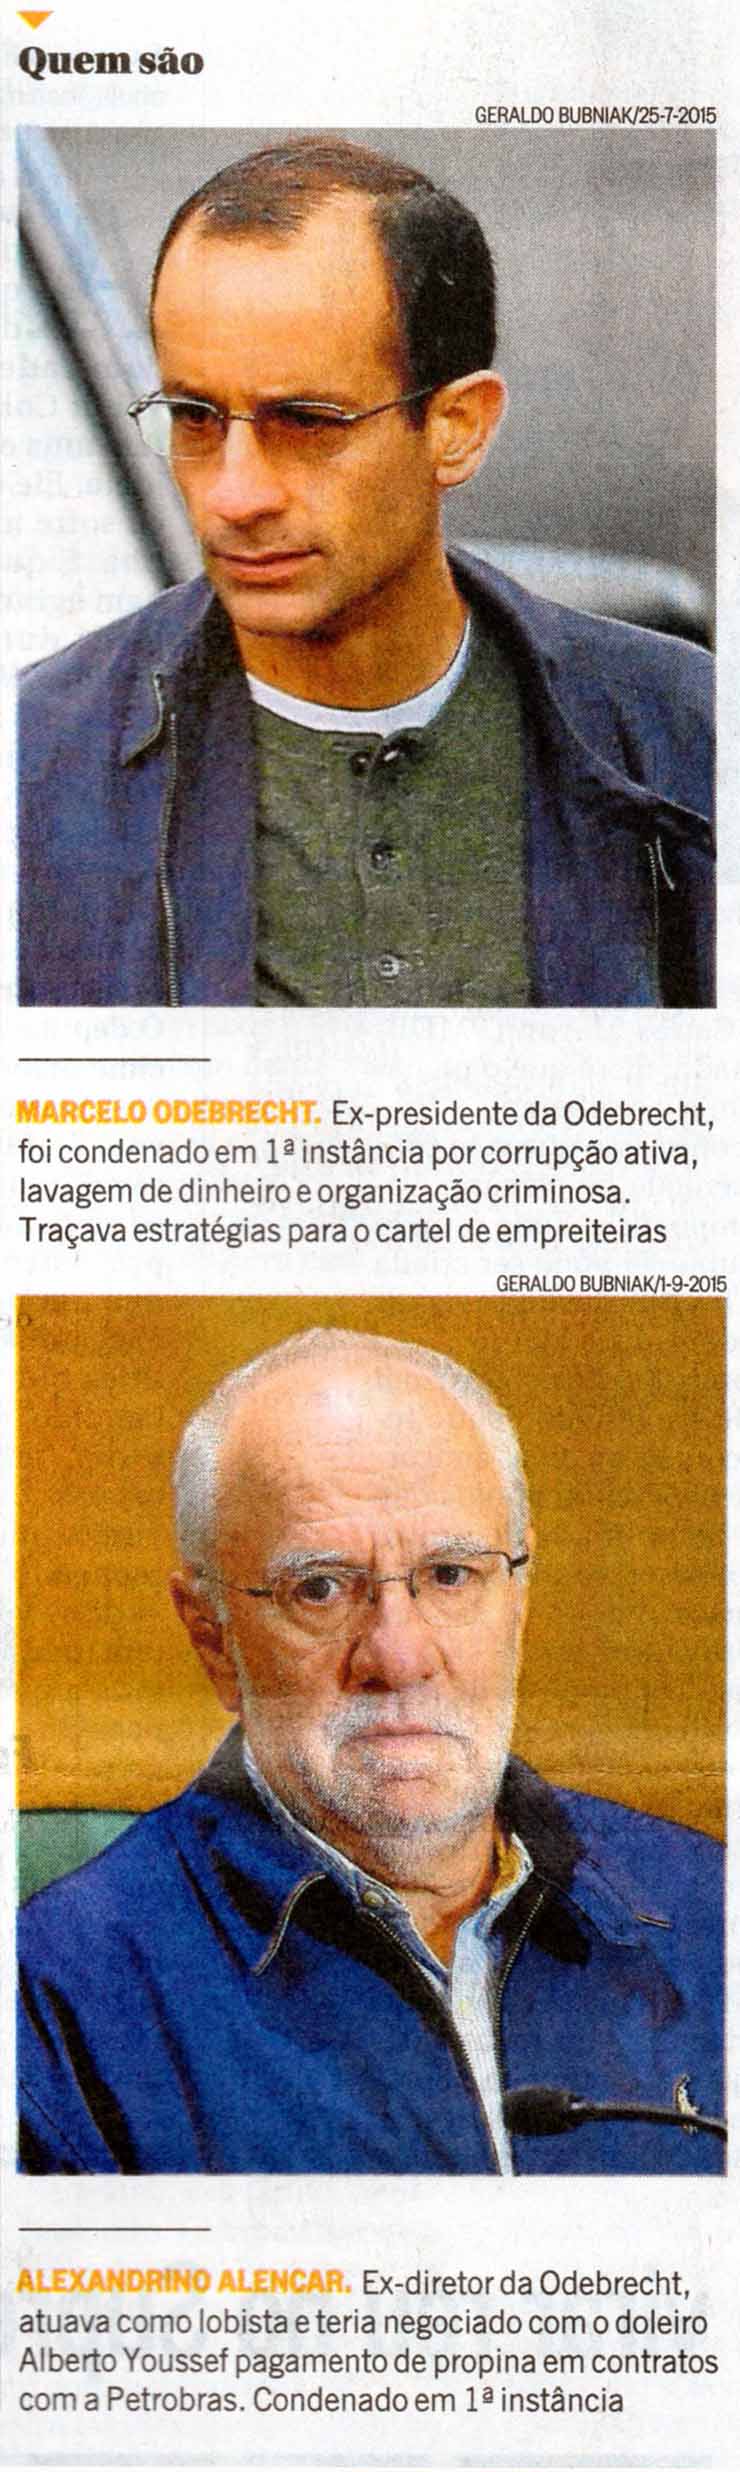 Odebrecht: Quem so executivos delatores - Agncia O Globo